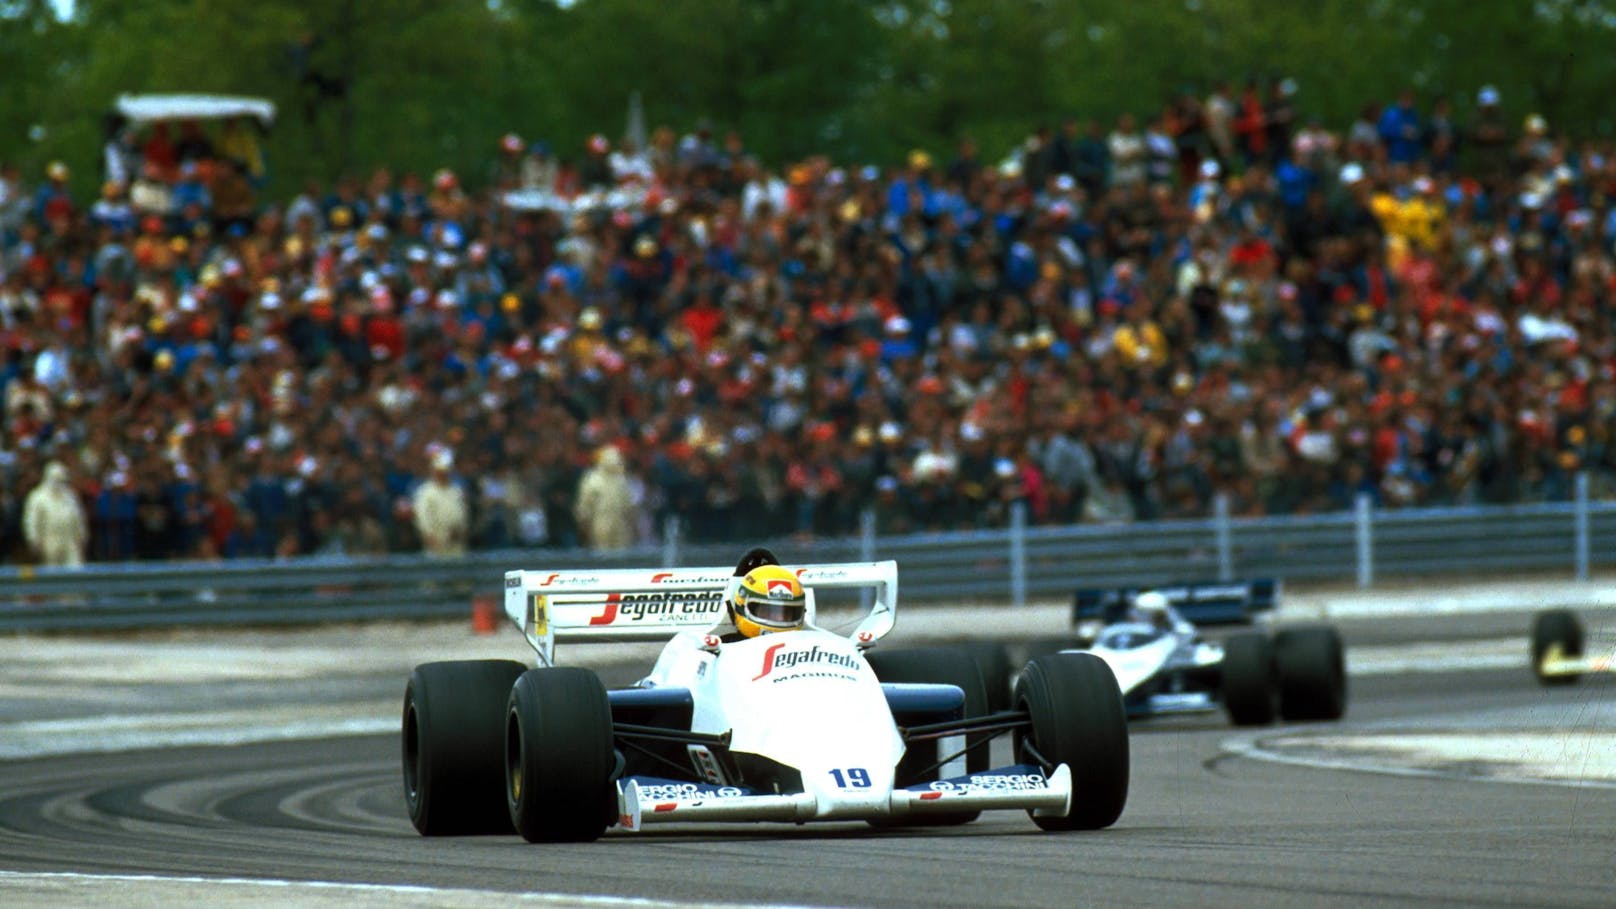 Formel-1-Welt trauert um ersten Senna-Teamchef